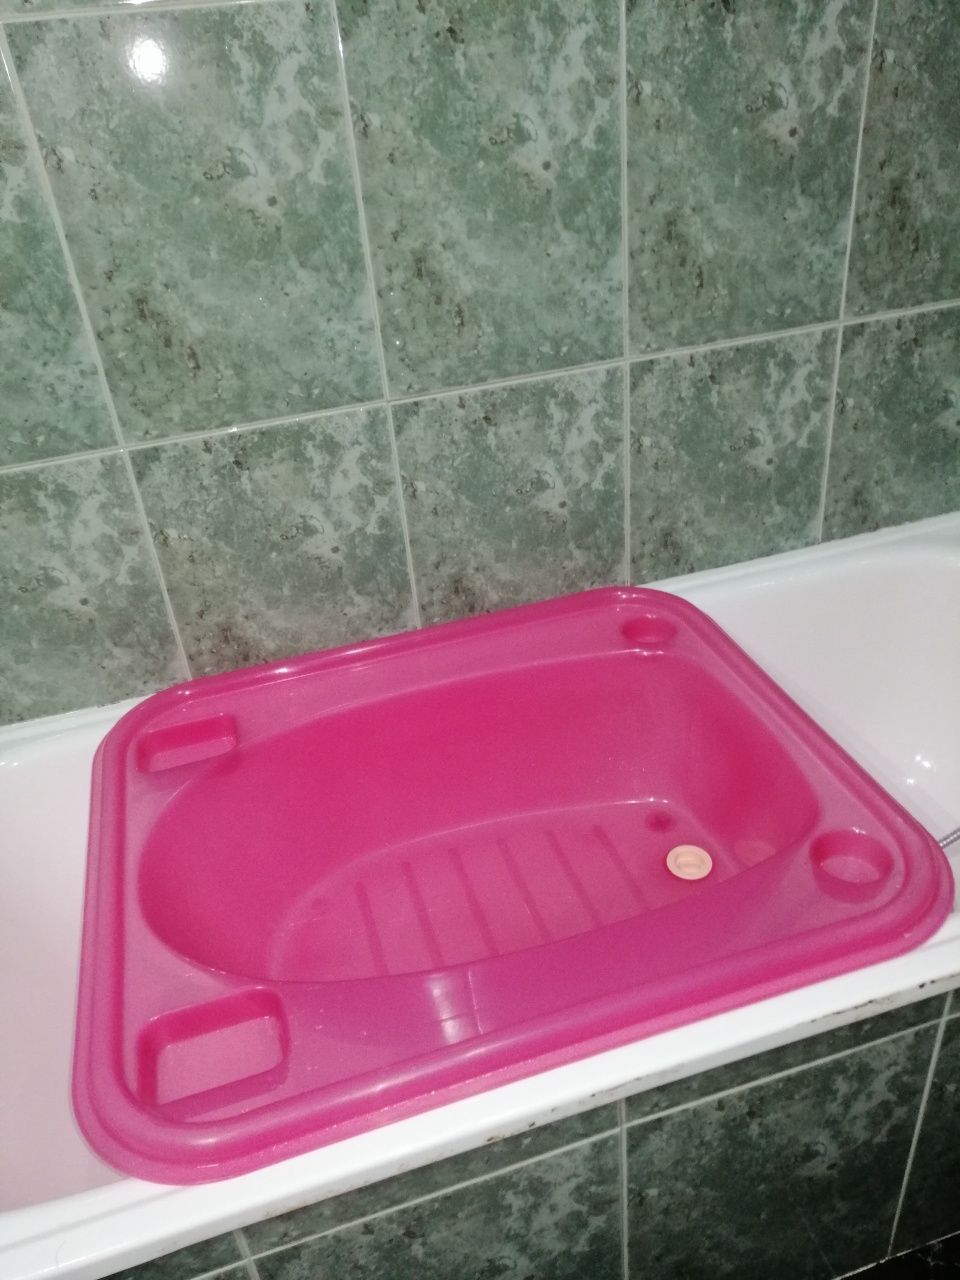 Banheira bebé de plástico, para adaptar a banheira.